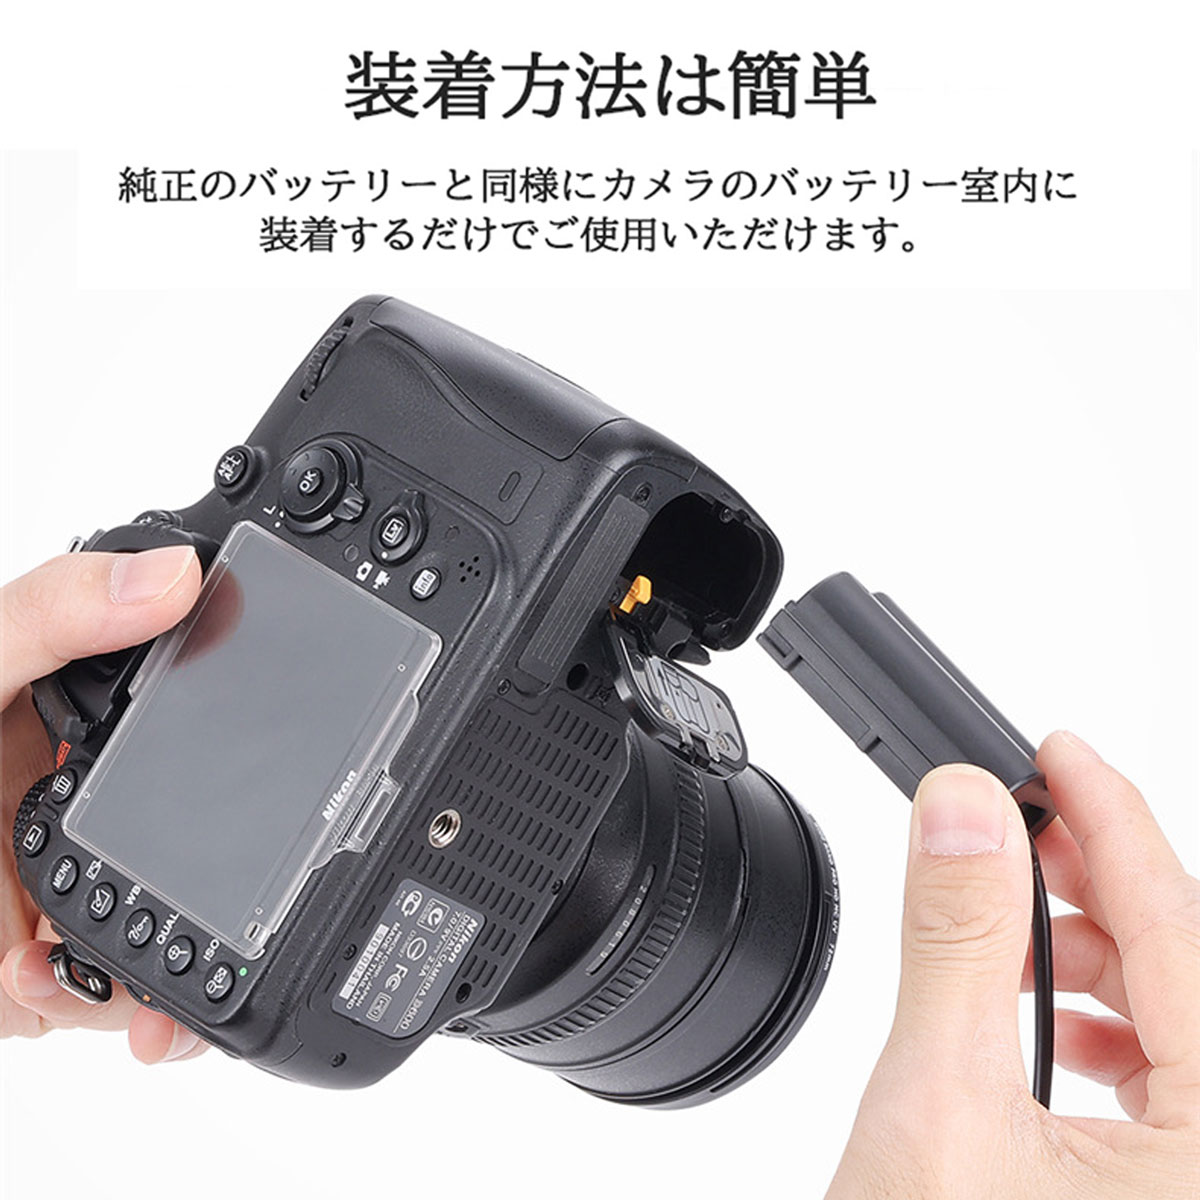 Nikon EN-EL15 / EP-5B 互換( ダミーバッテリー ) Type-C カプラー1個